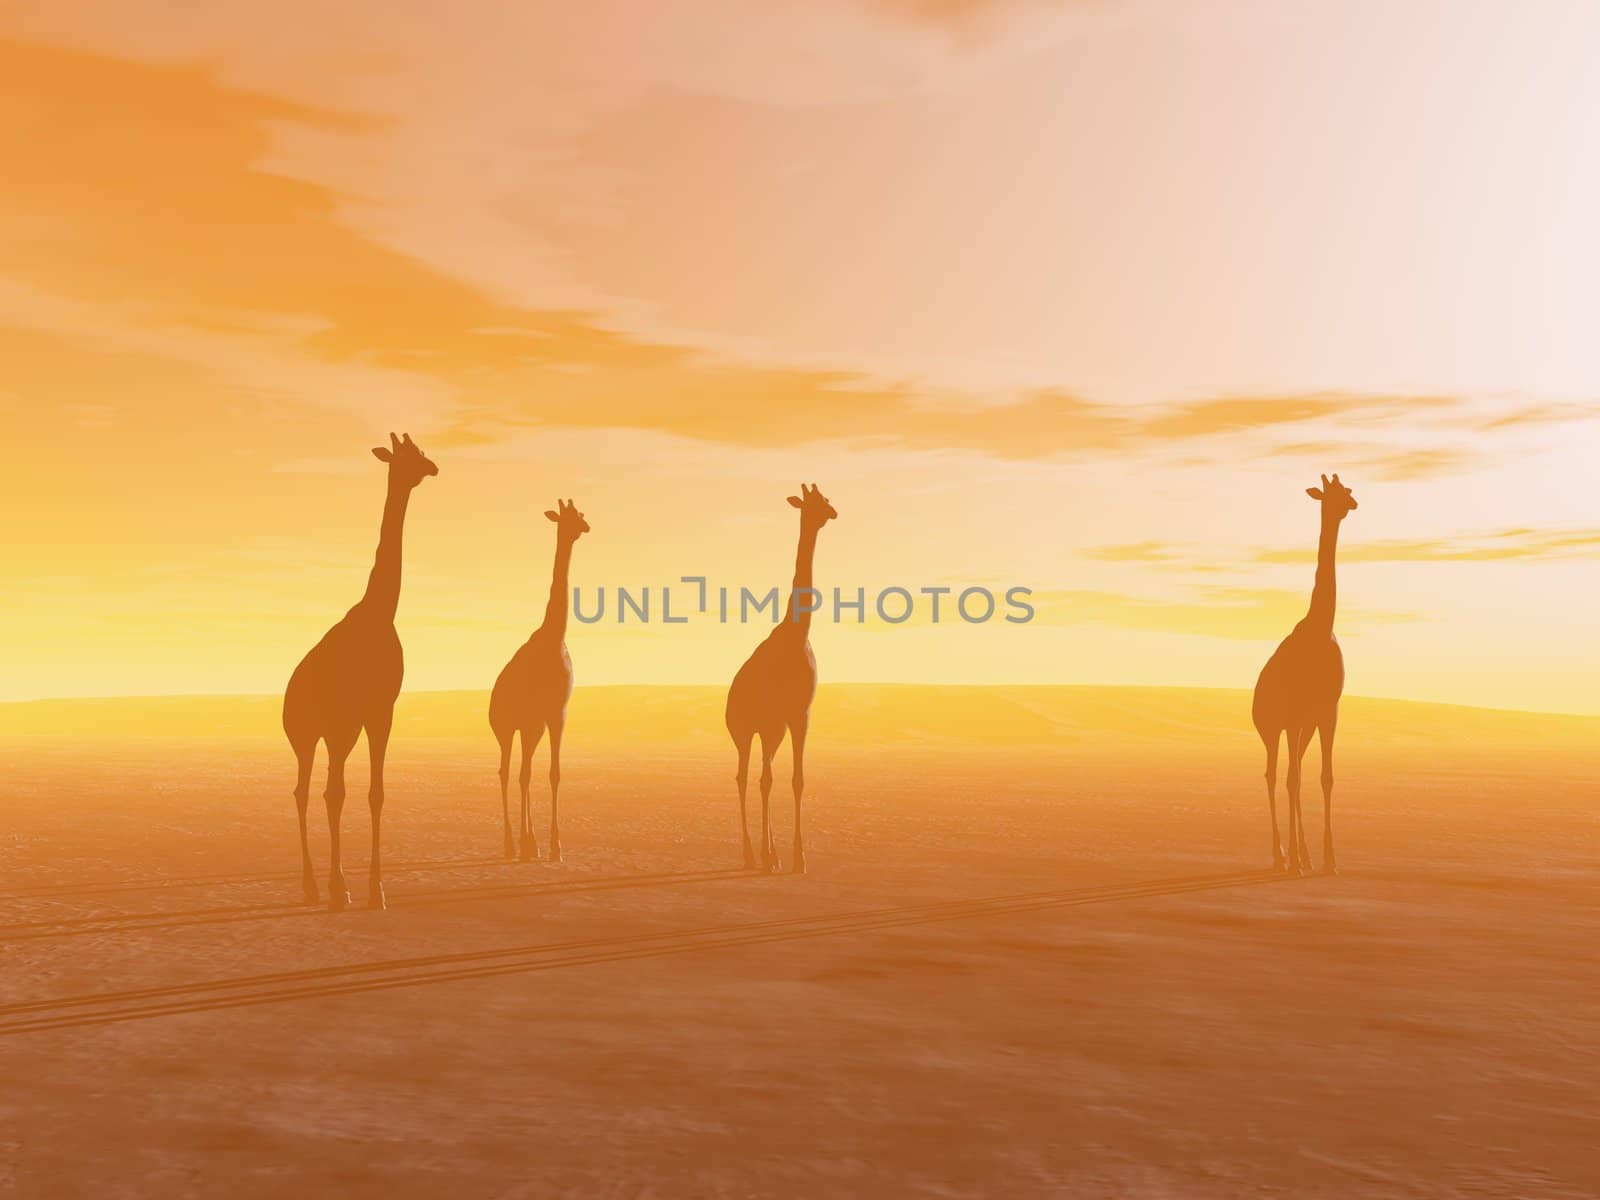 Giraffes in the desert - 3D render by Elenaphotos21